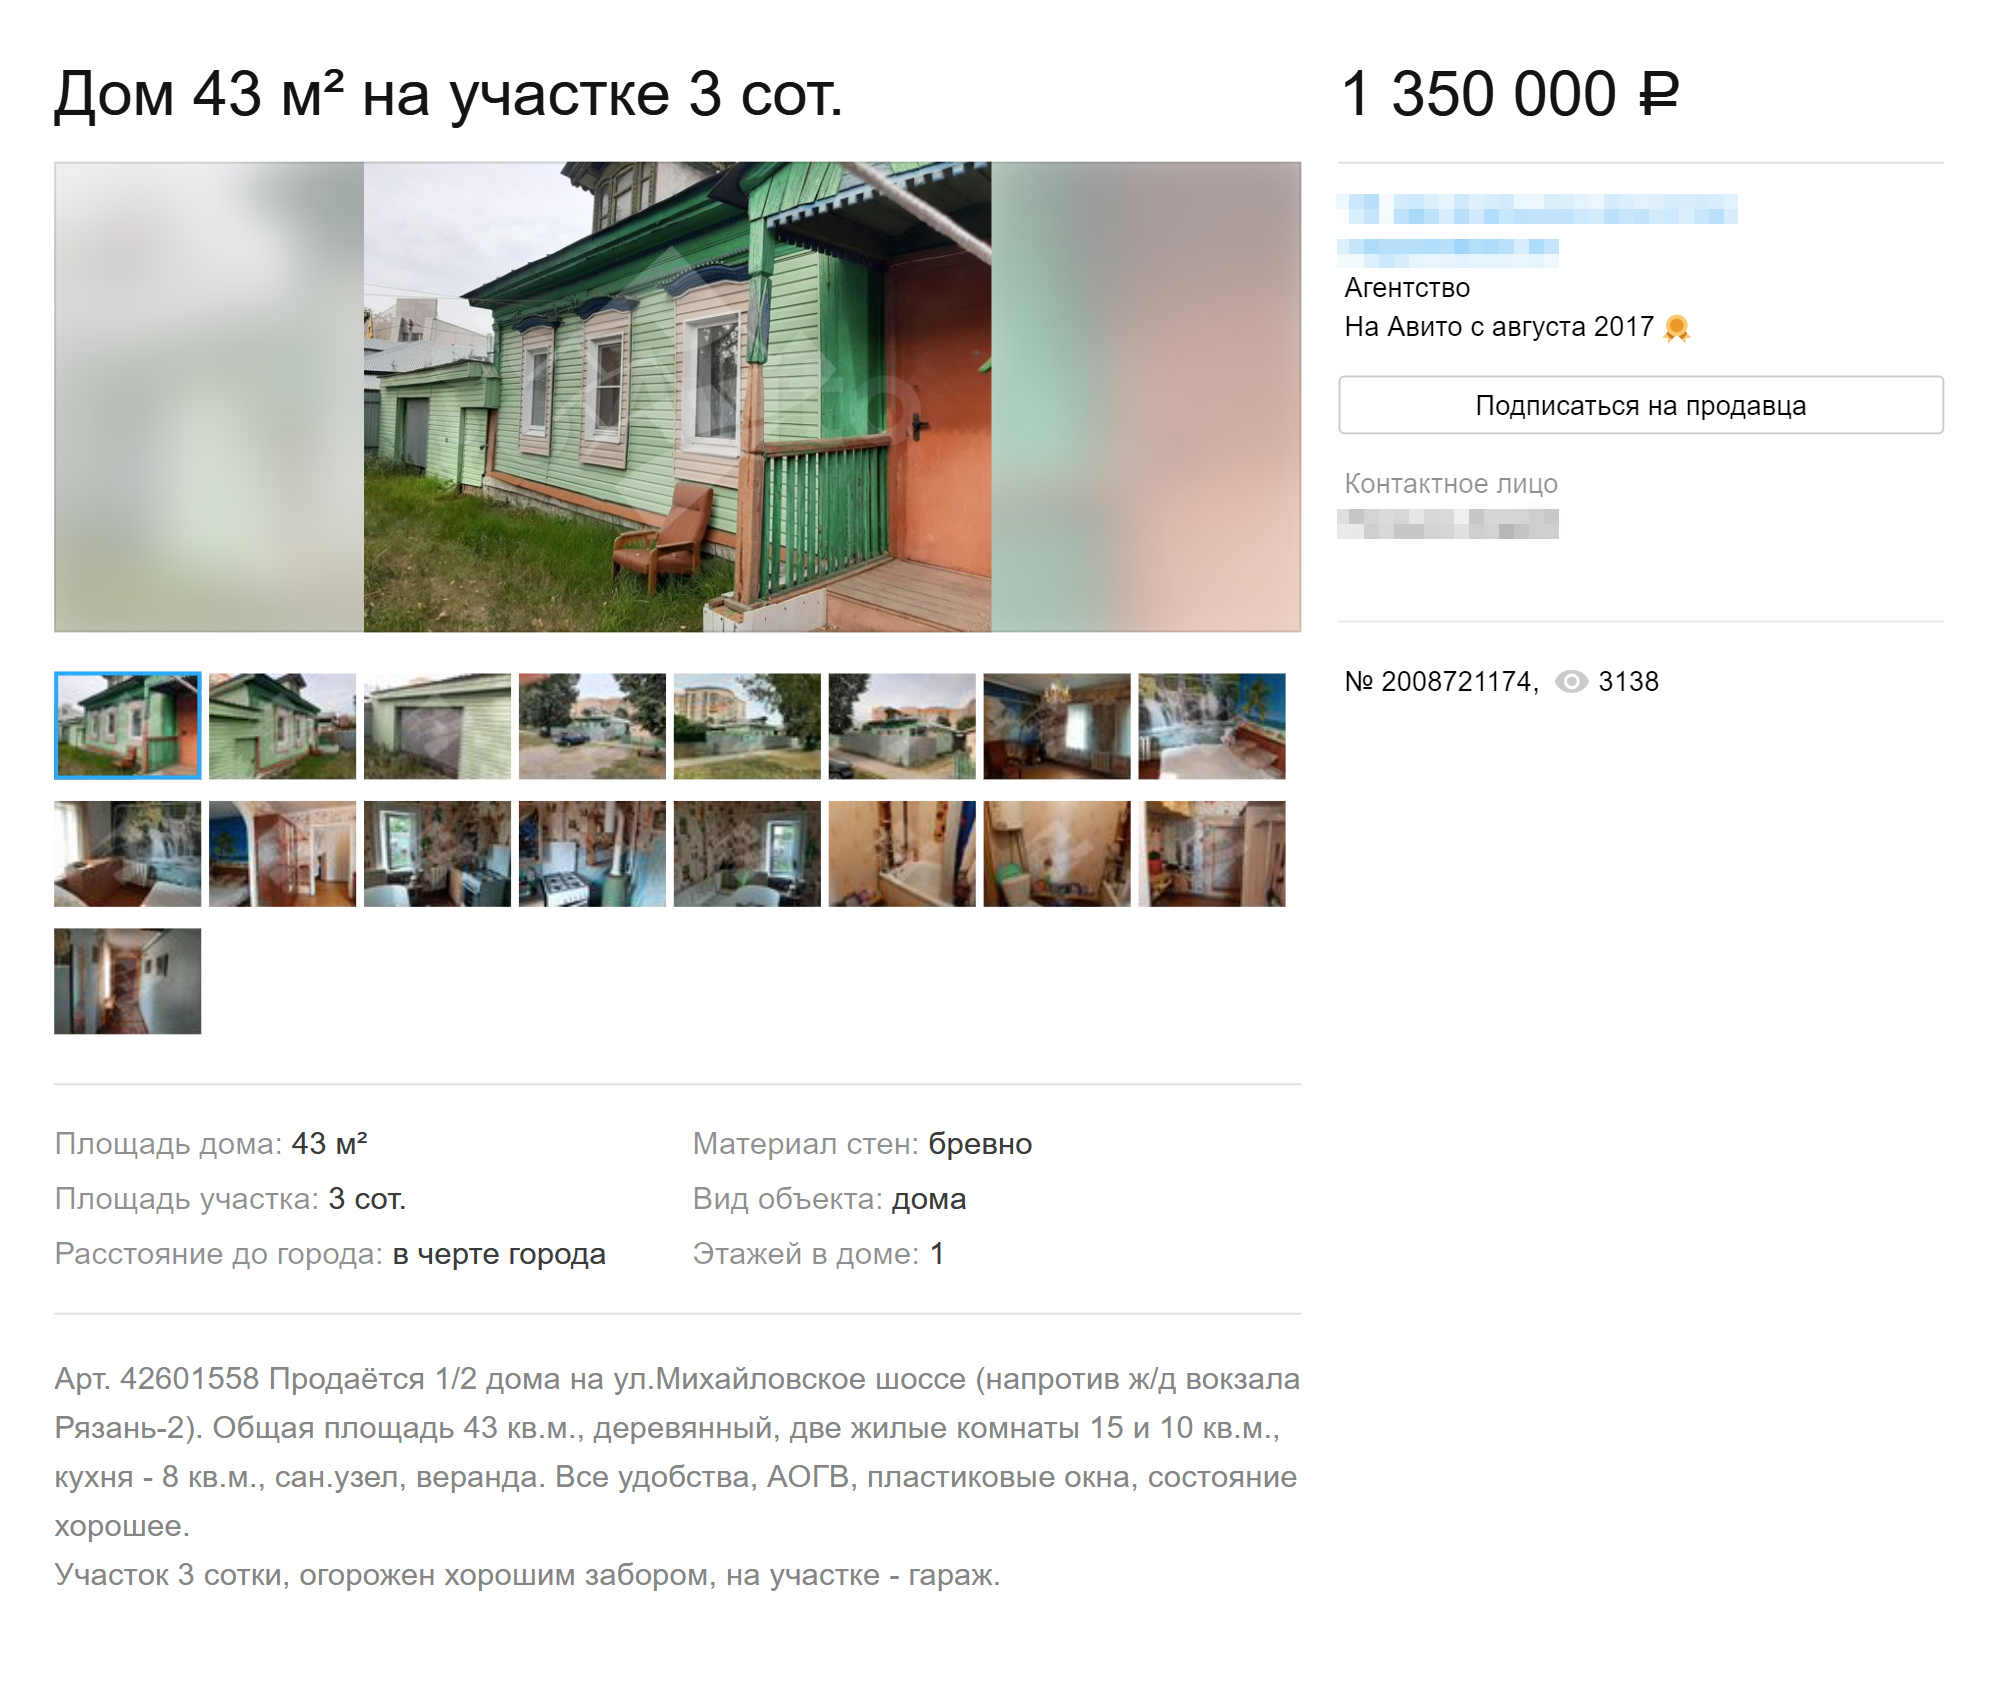 Жизнь в Рязани: население, цены на жилье, работа и зарплаты